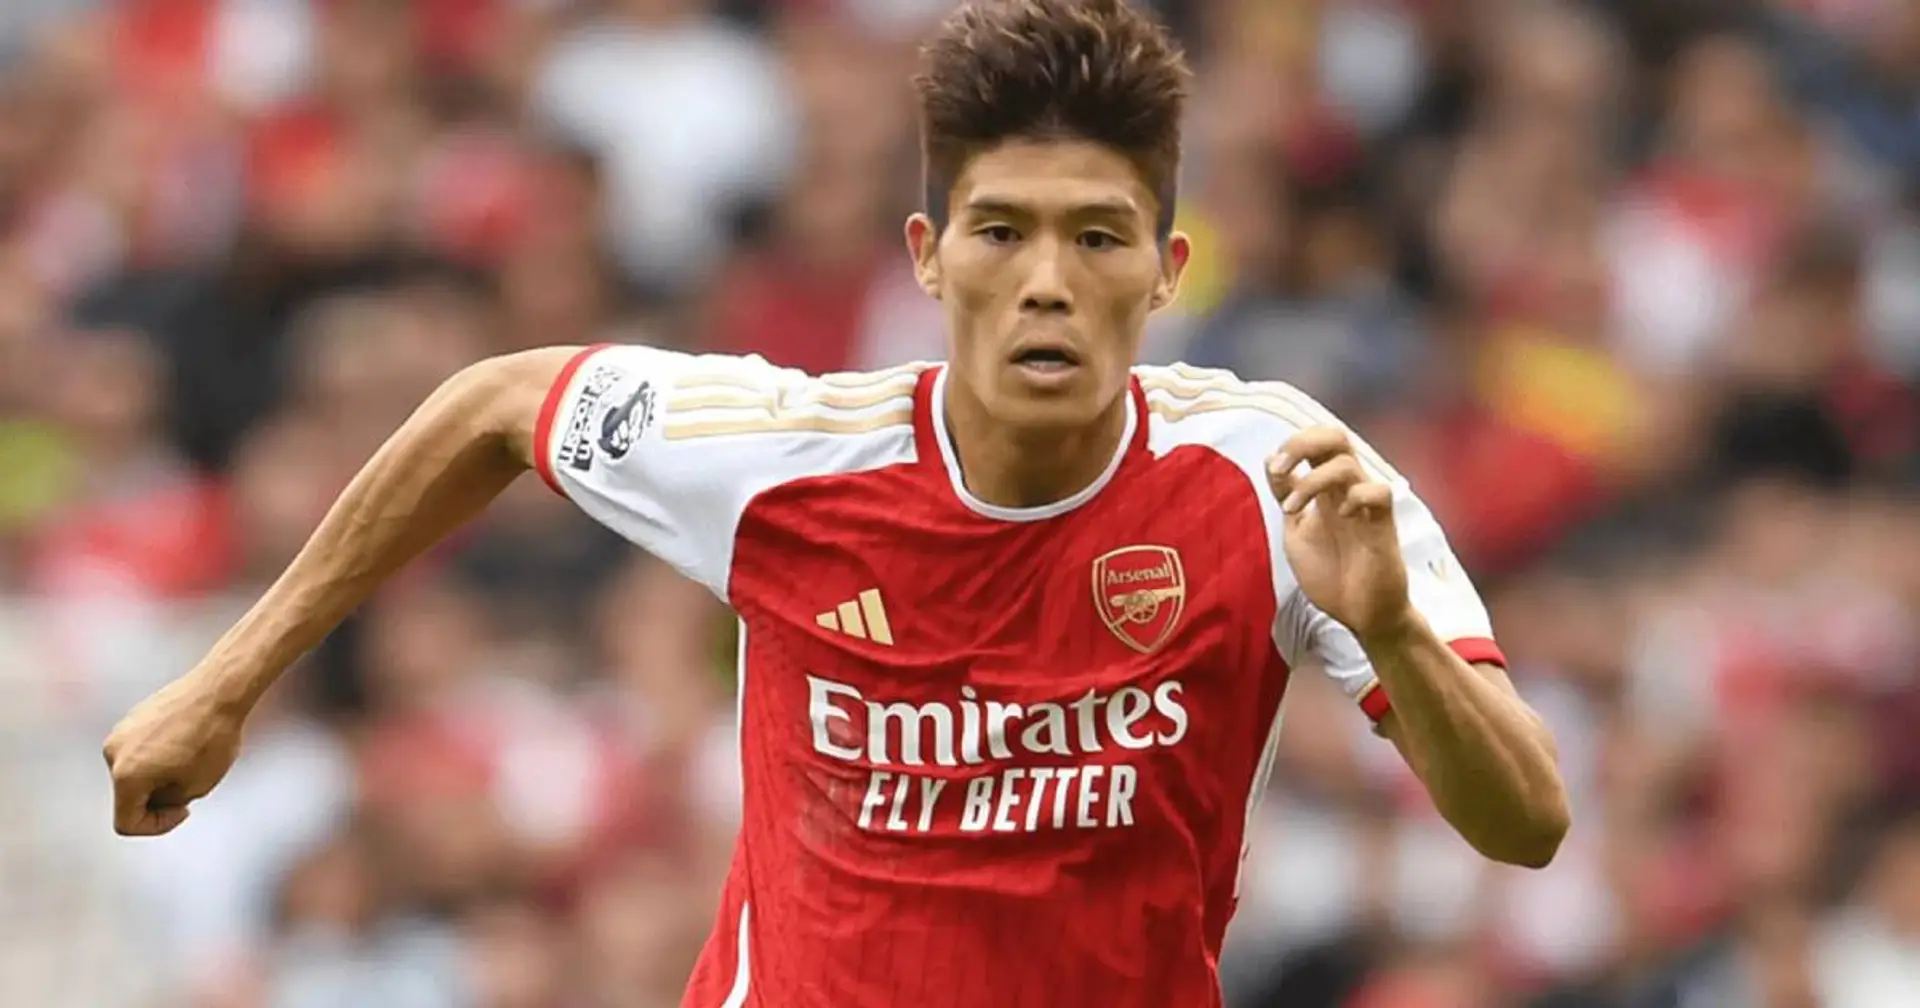 "Daraus wird nichts": Bayern-Flirt Tomiyasu bleibt definitiv bei Arsenal - Sky